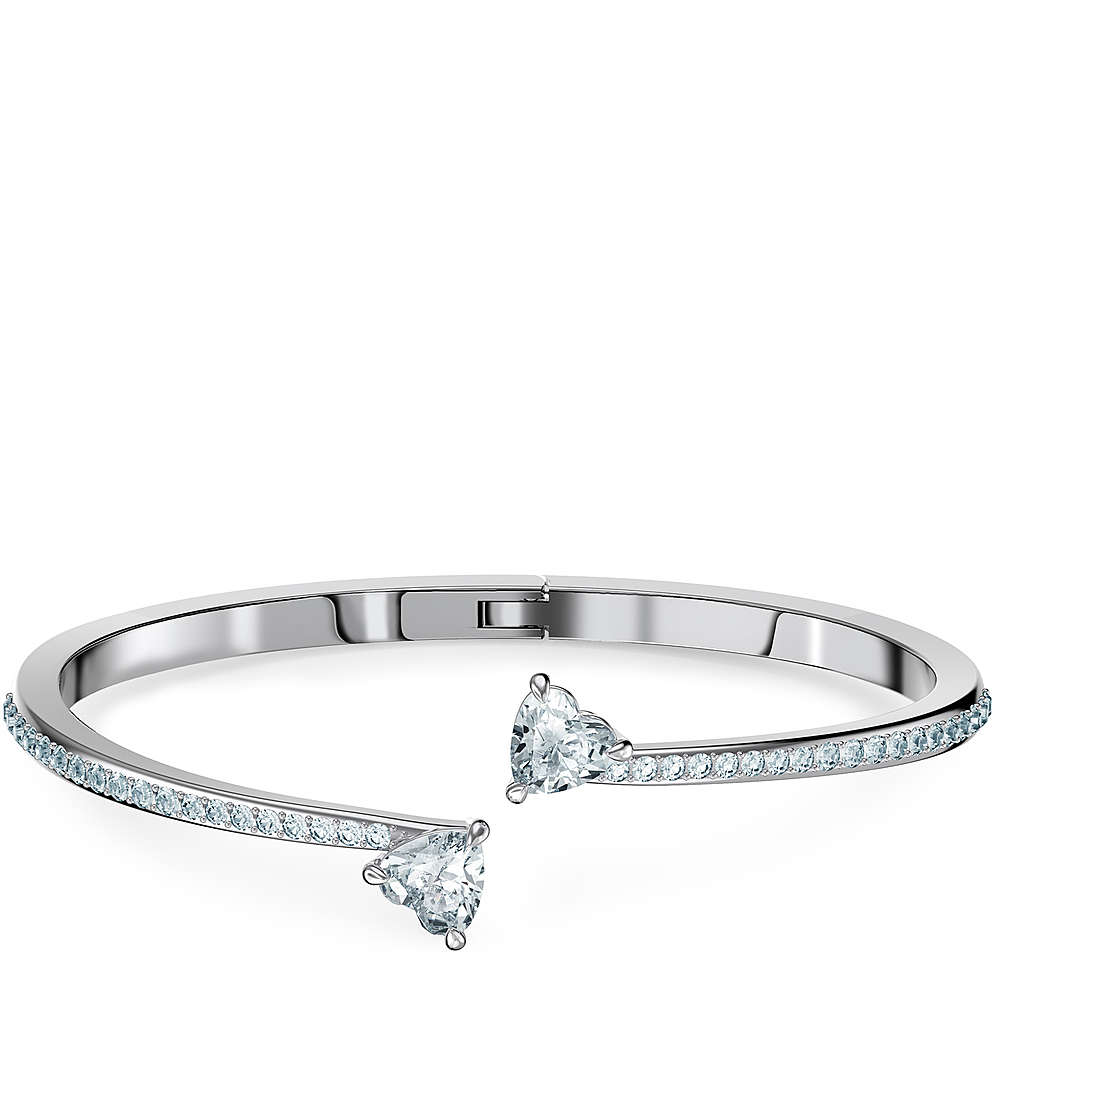 bracelet woman jewellery Swarovski Attract 5518814